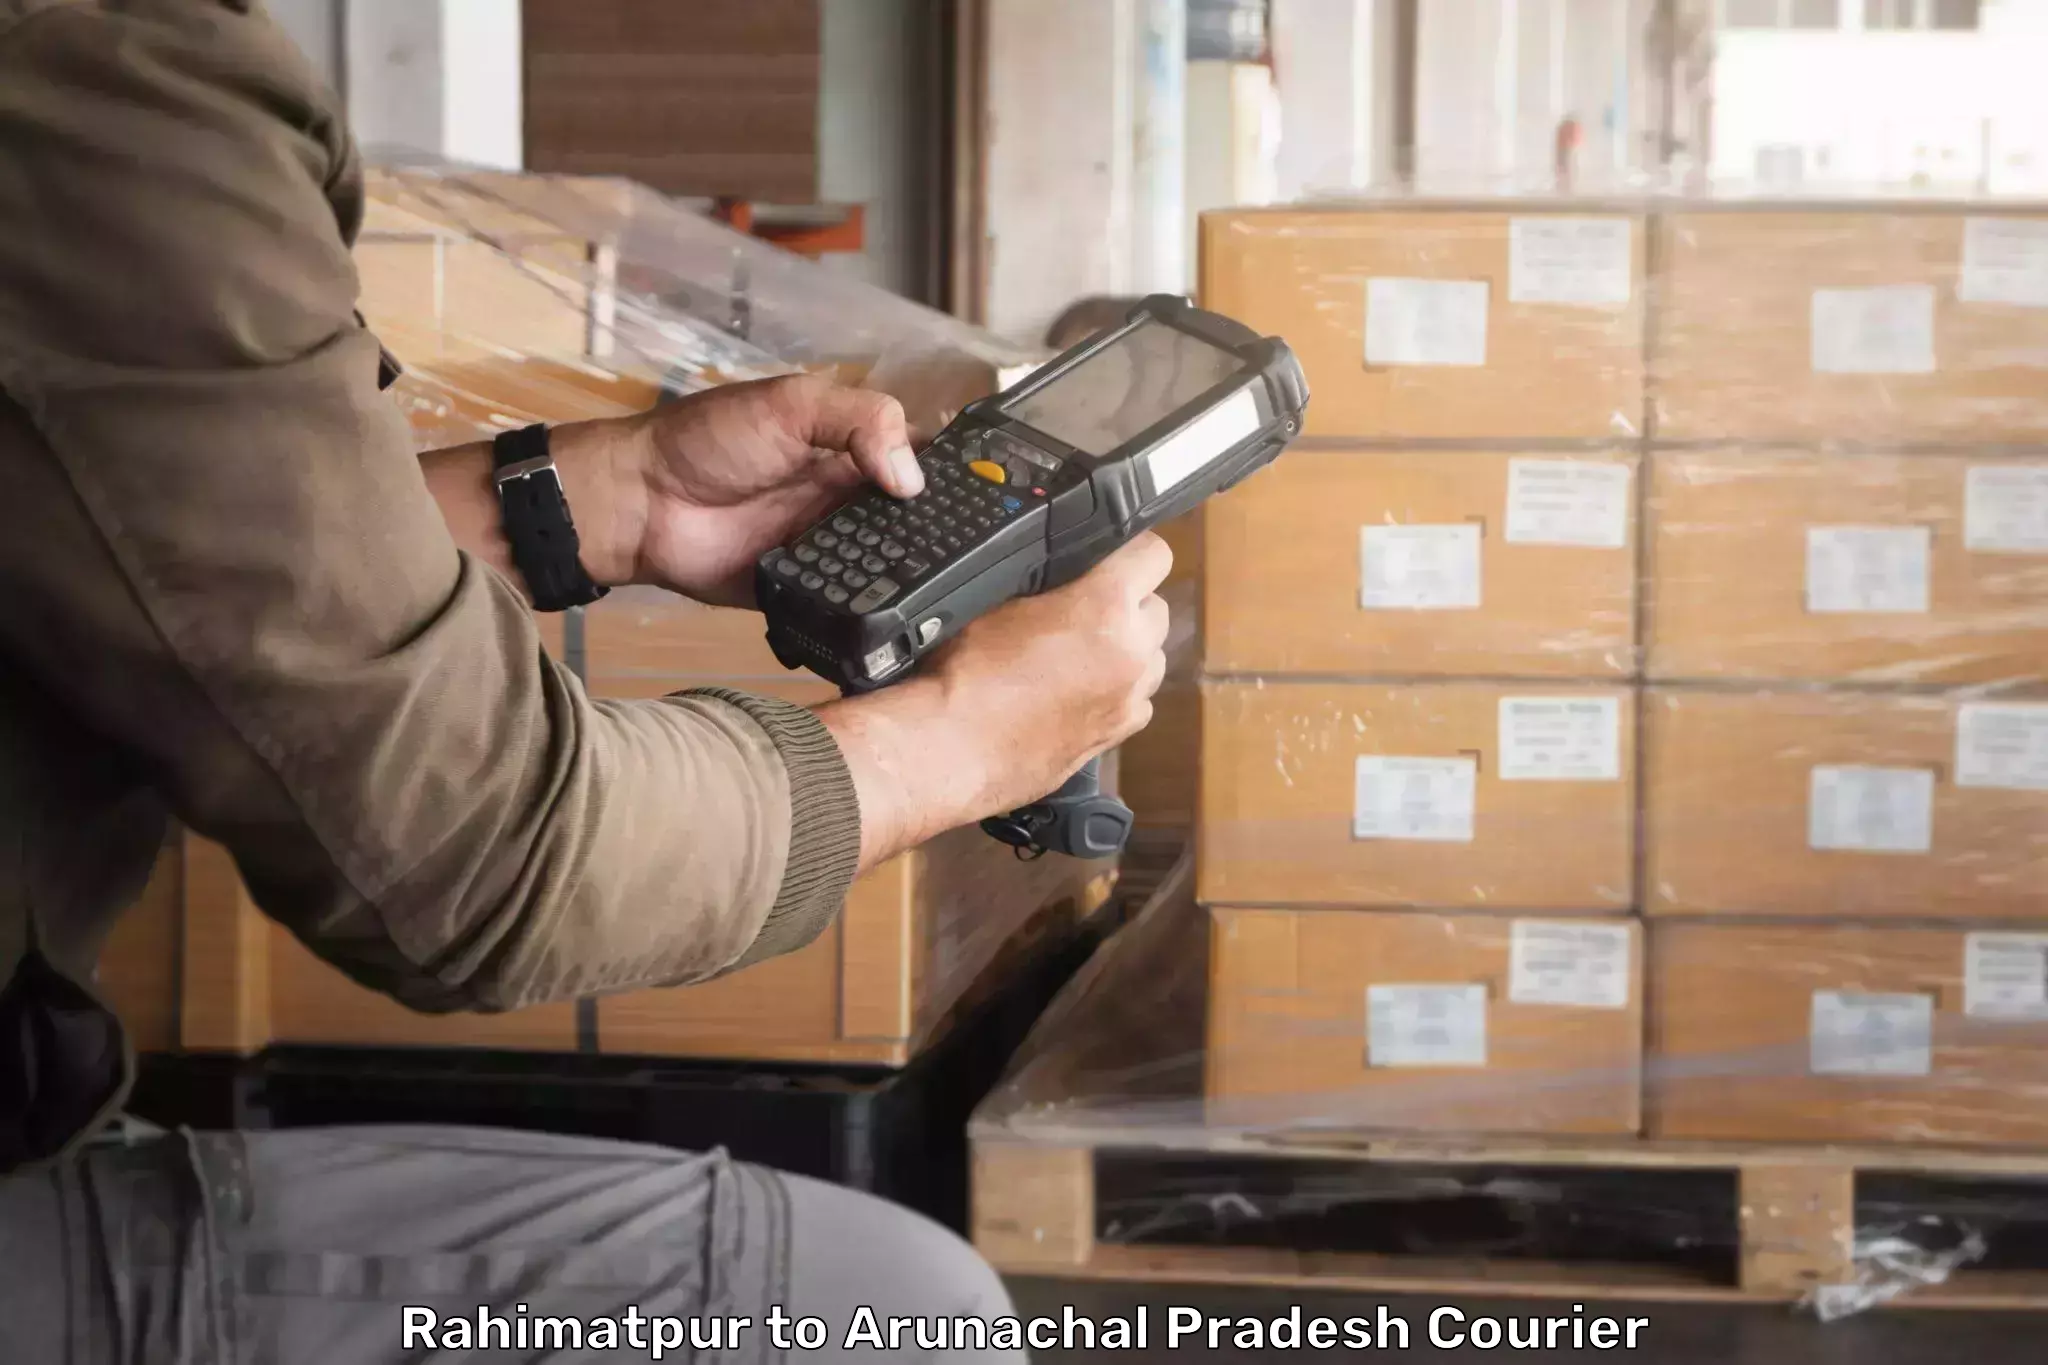 International logistics solutions Rahimatpur to Lower Subansiri